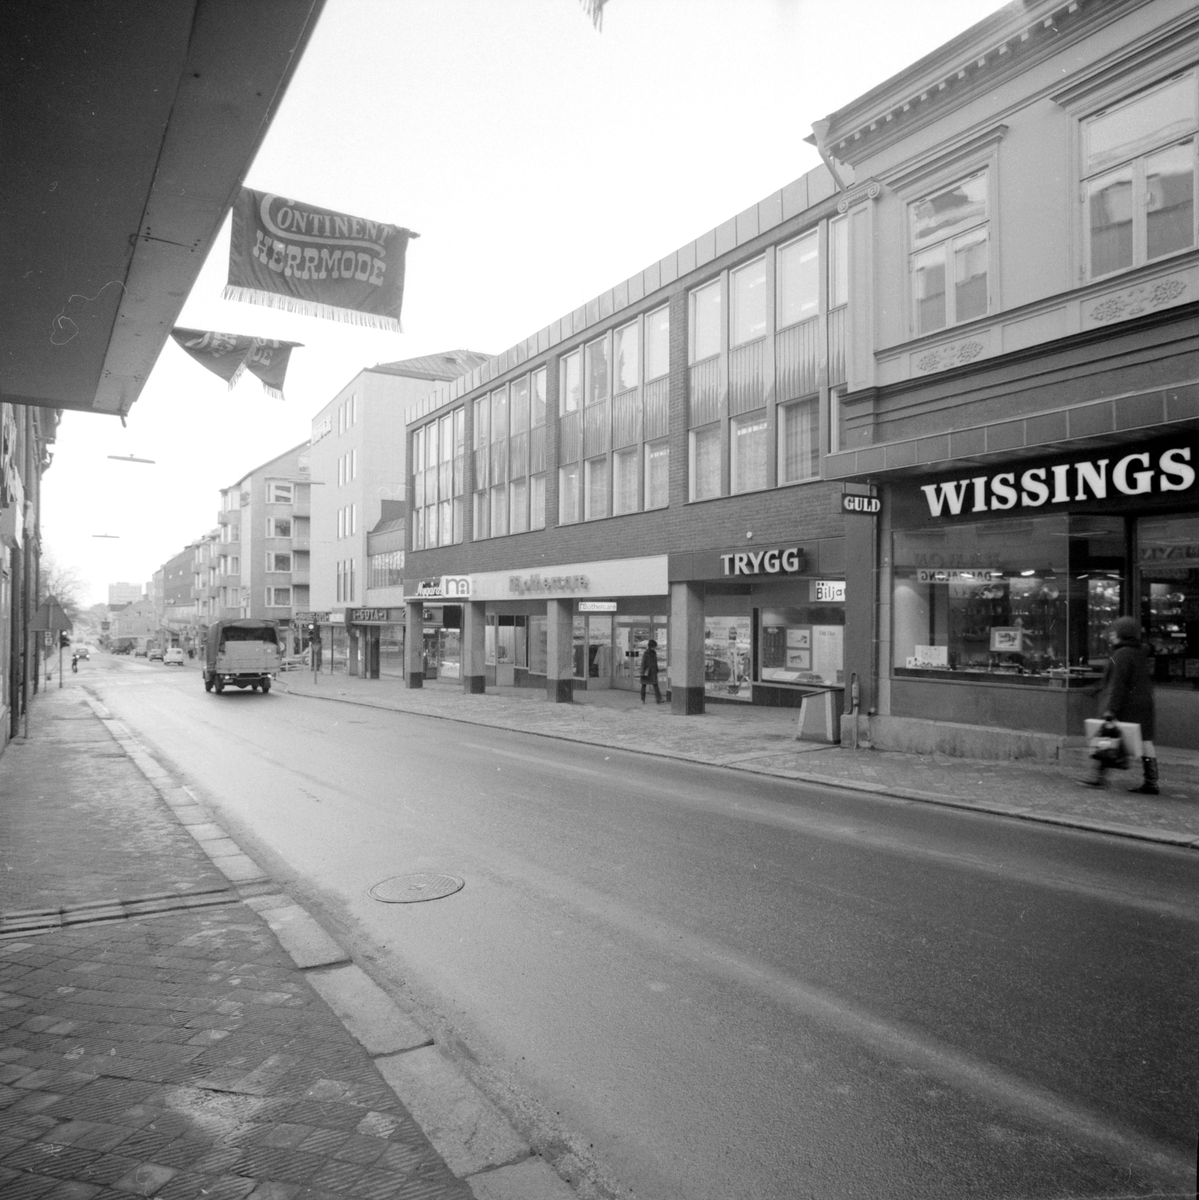 Vardagligt motiv från Storgatan i Linköping. Tiden är en vårvinterdag 1971 och byggnaderna i blickfånget är nyligen färdigställda. Bland butikerna återfinner vi ett nymodigt inslag i Mothercare från den brittiska butikskedjan med samma namn och som specialiserats sig på artiklar för blivande föräldrar.